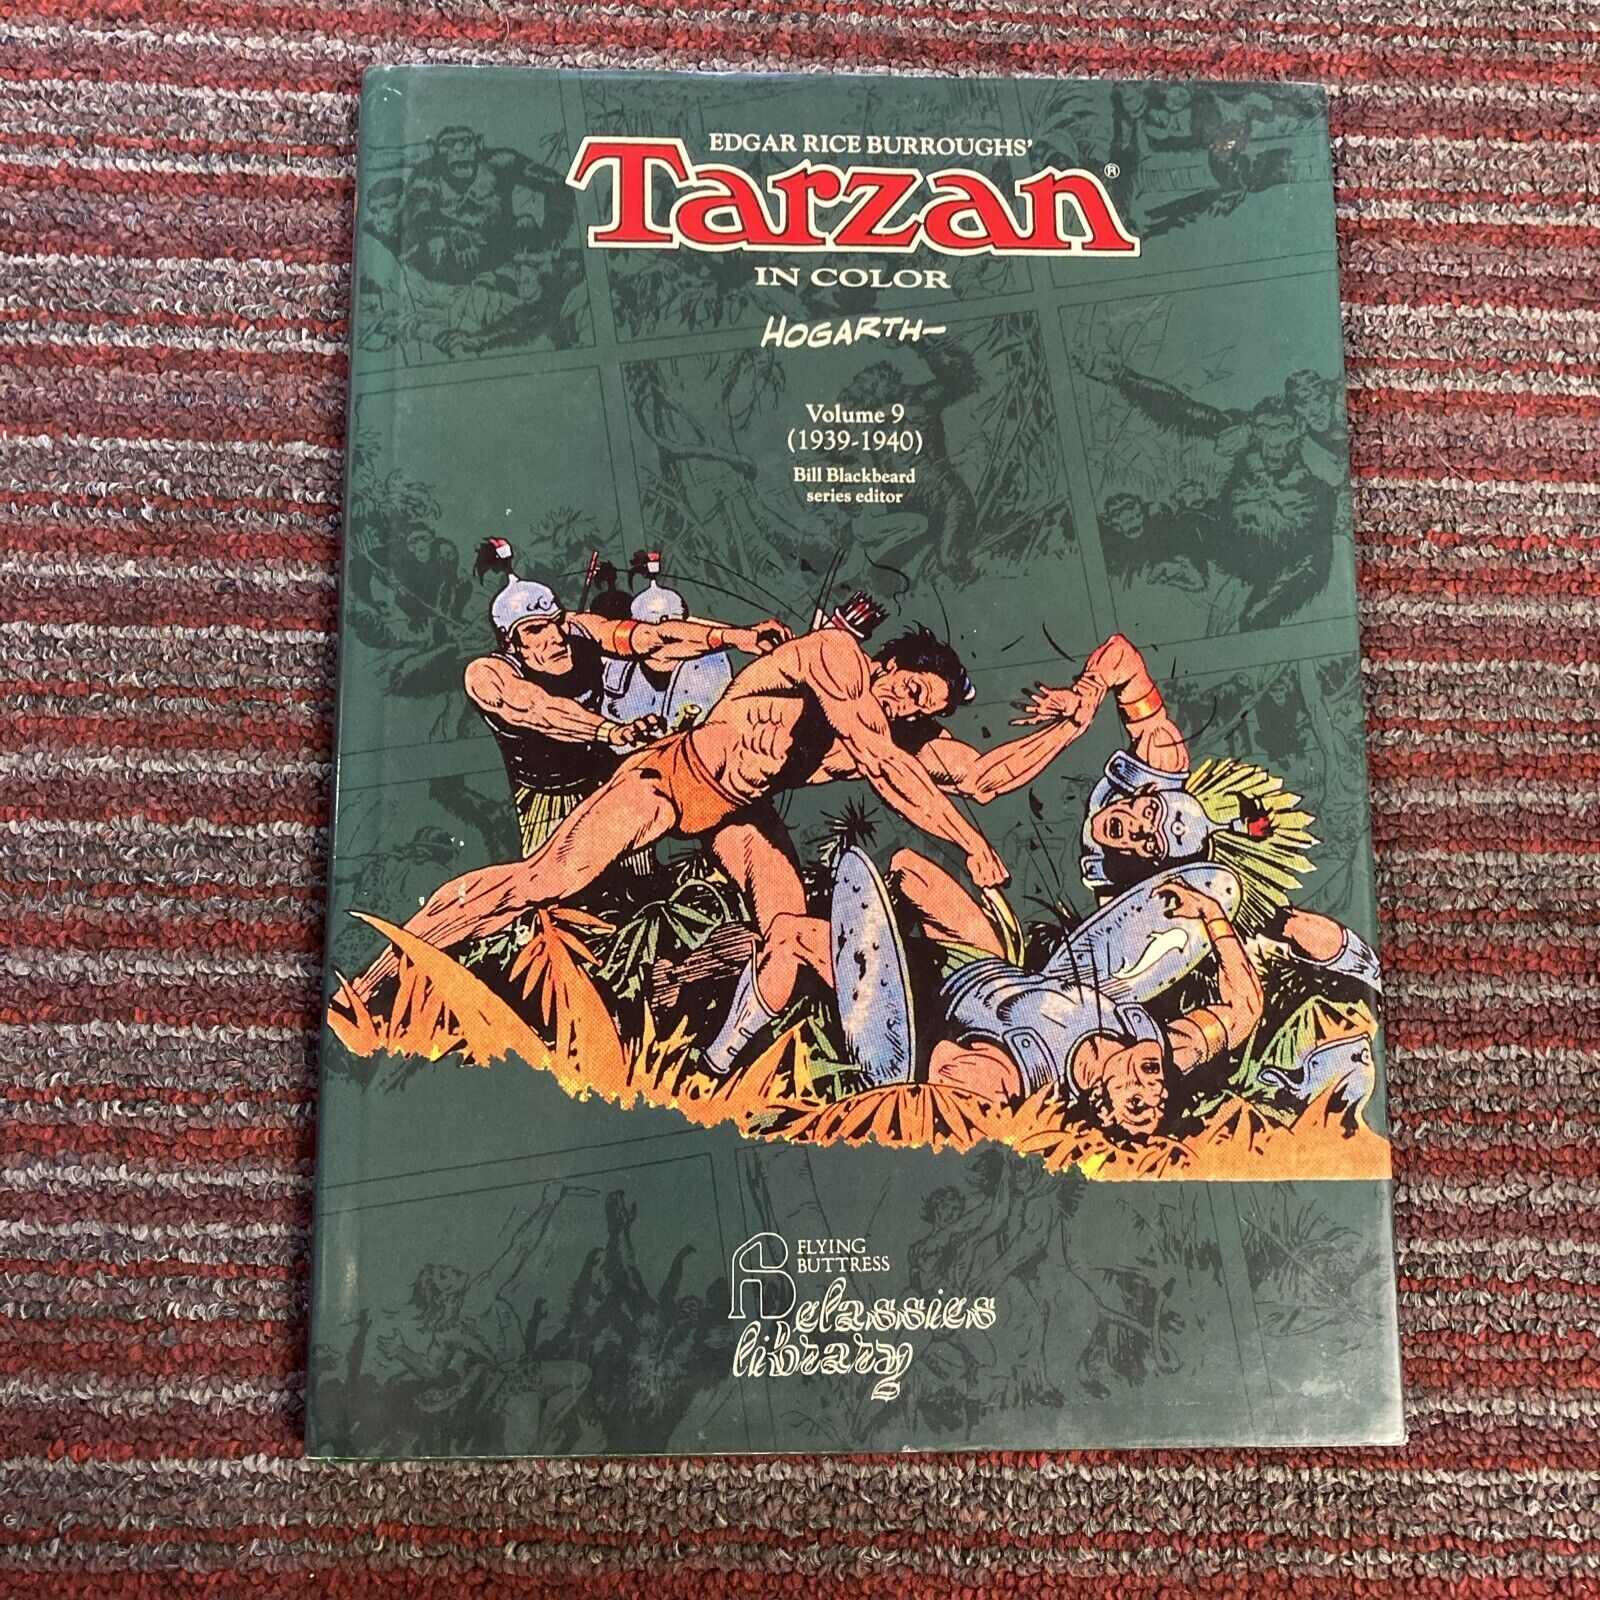 Tarzan in Color #9 (NBM Publishing, October 1994)